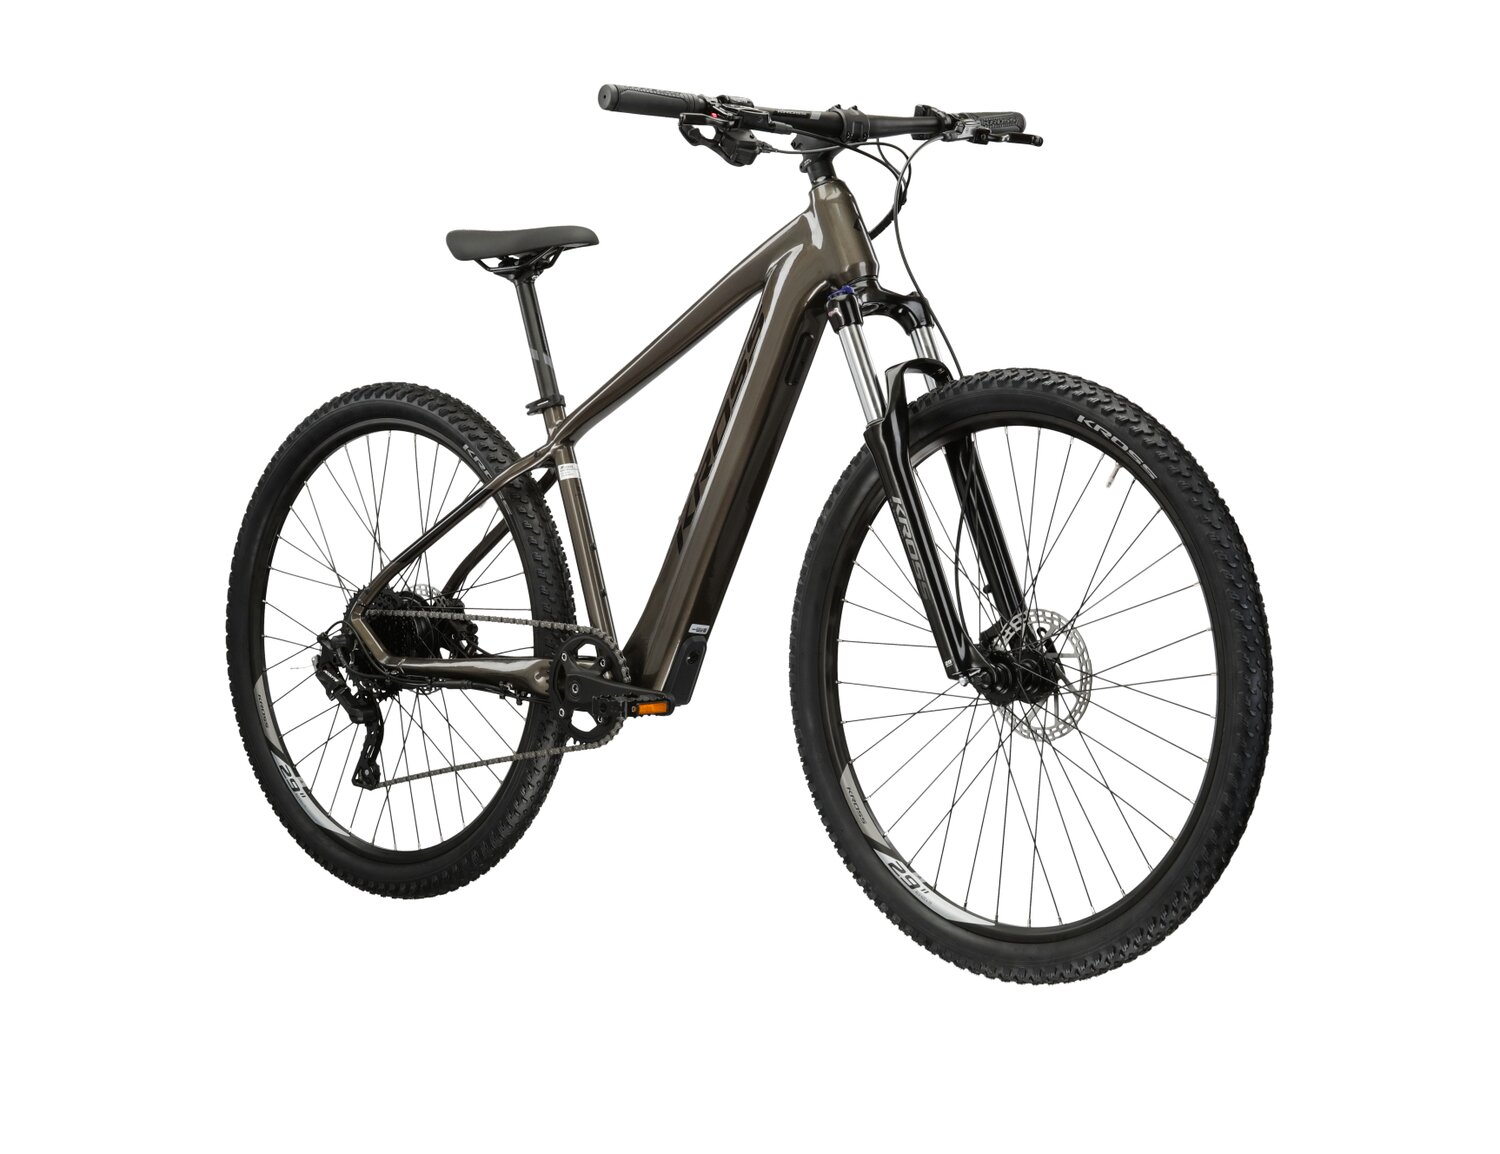 Elektryczny rower górski MTB Kross Hexagon Boost 2.0 349 Wh na aluminiowej ramie w kolorze brązowym wyposażony w osprzęt Microshift i napęd elektryczny Hyena